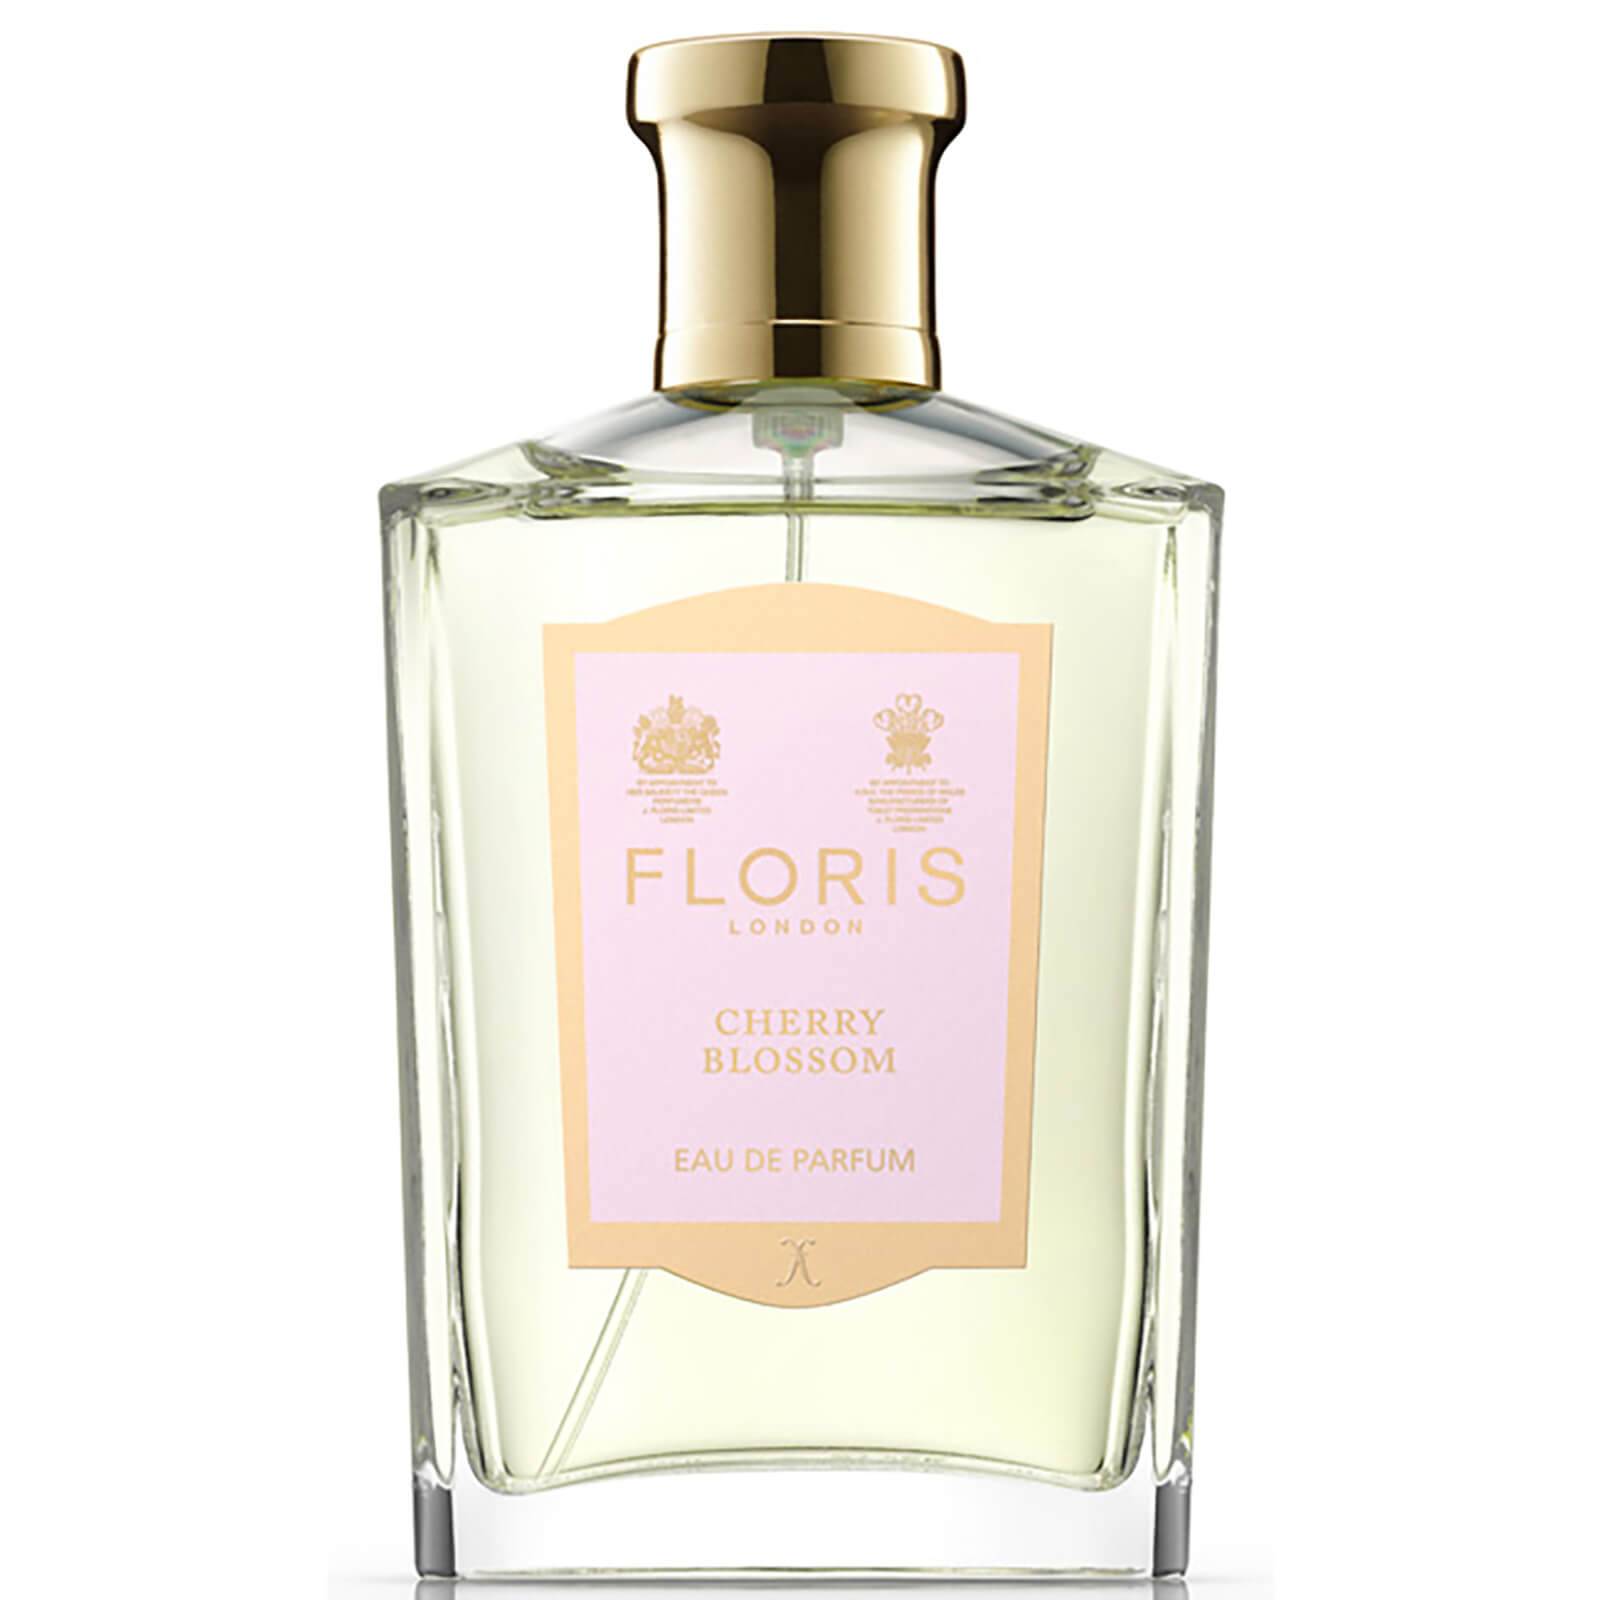 Floris London Cherry Blossom Eau de Parfum 100ml